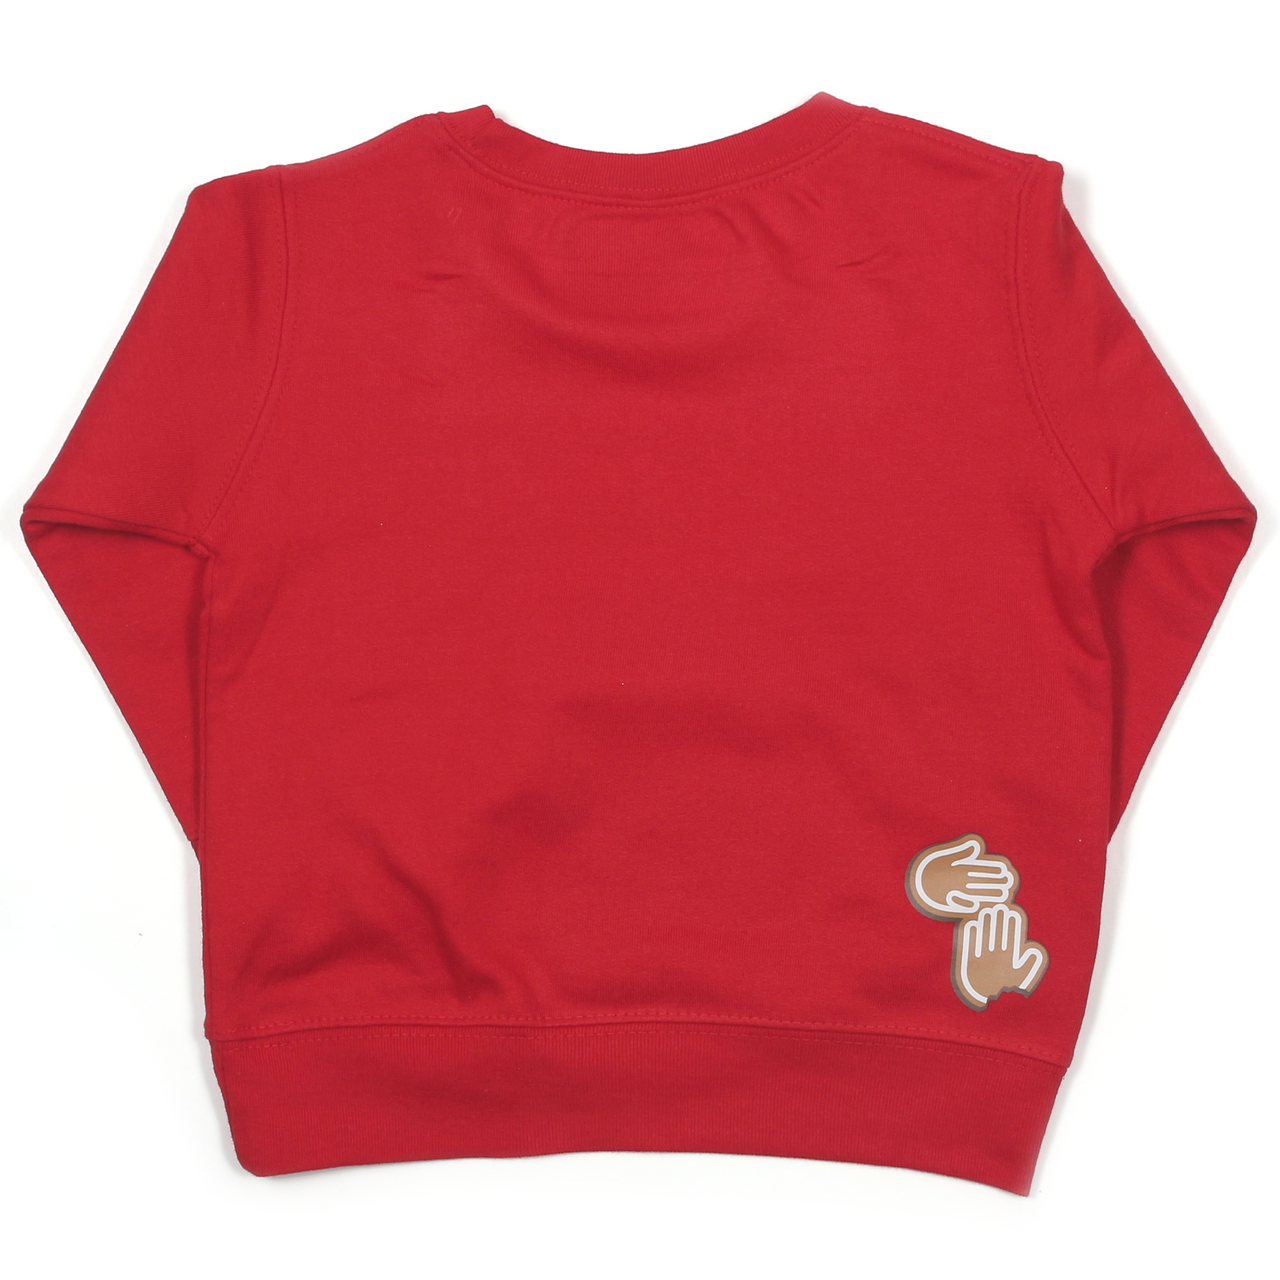 Not-So-Ugly Christmas Sweatshirt (Toddler)